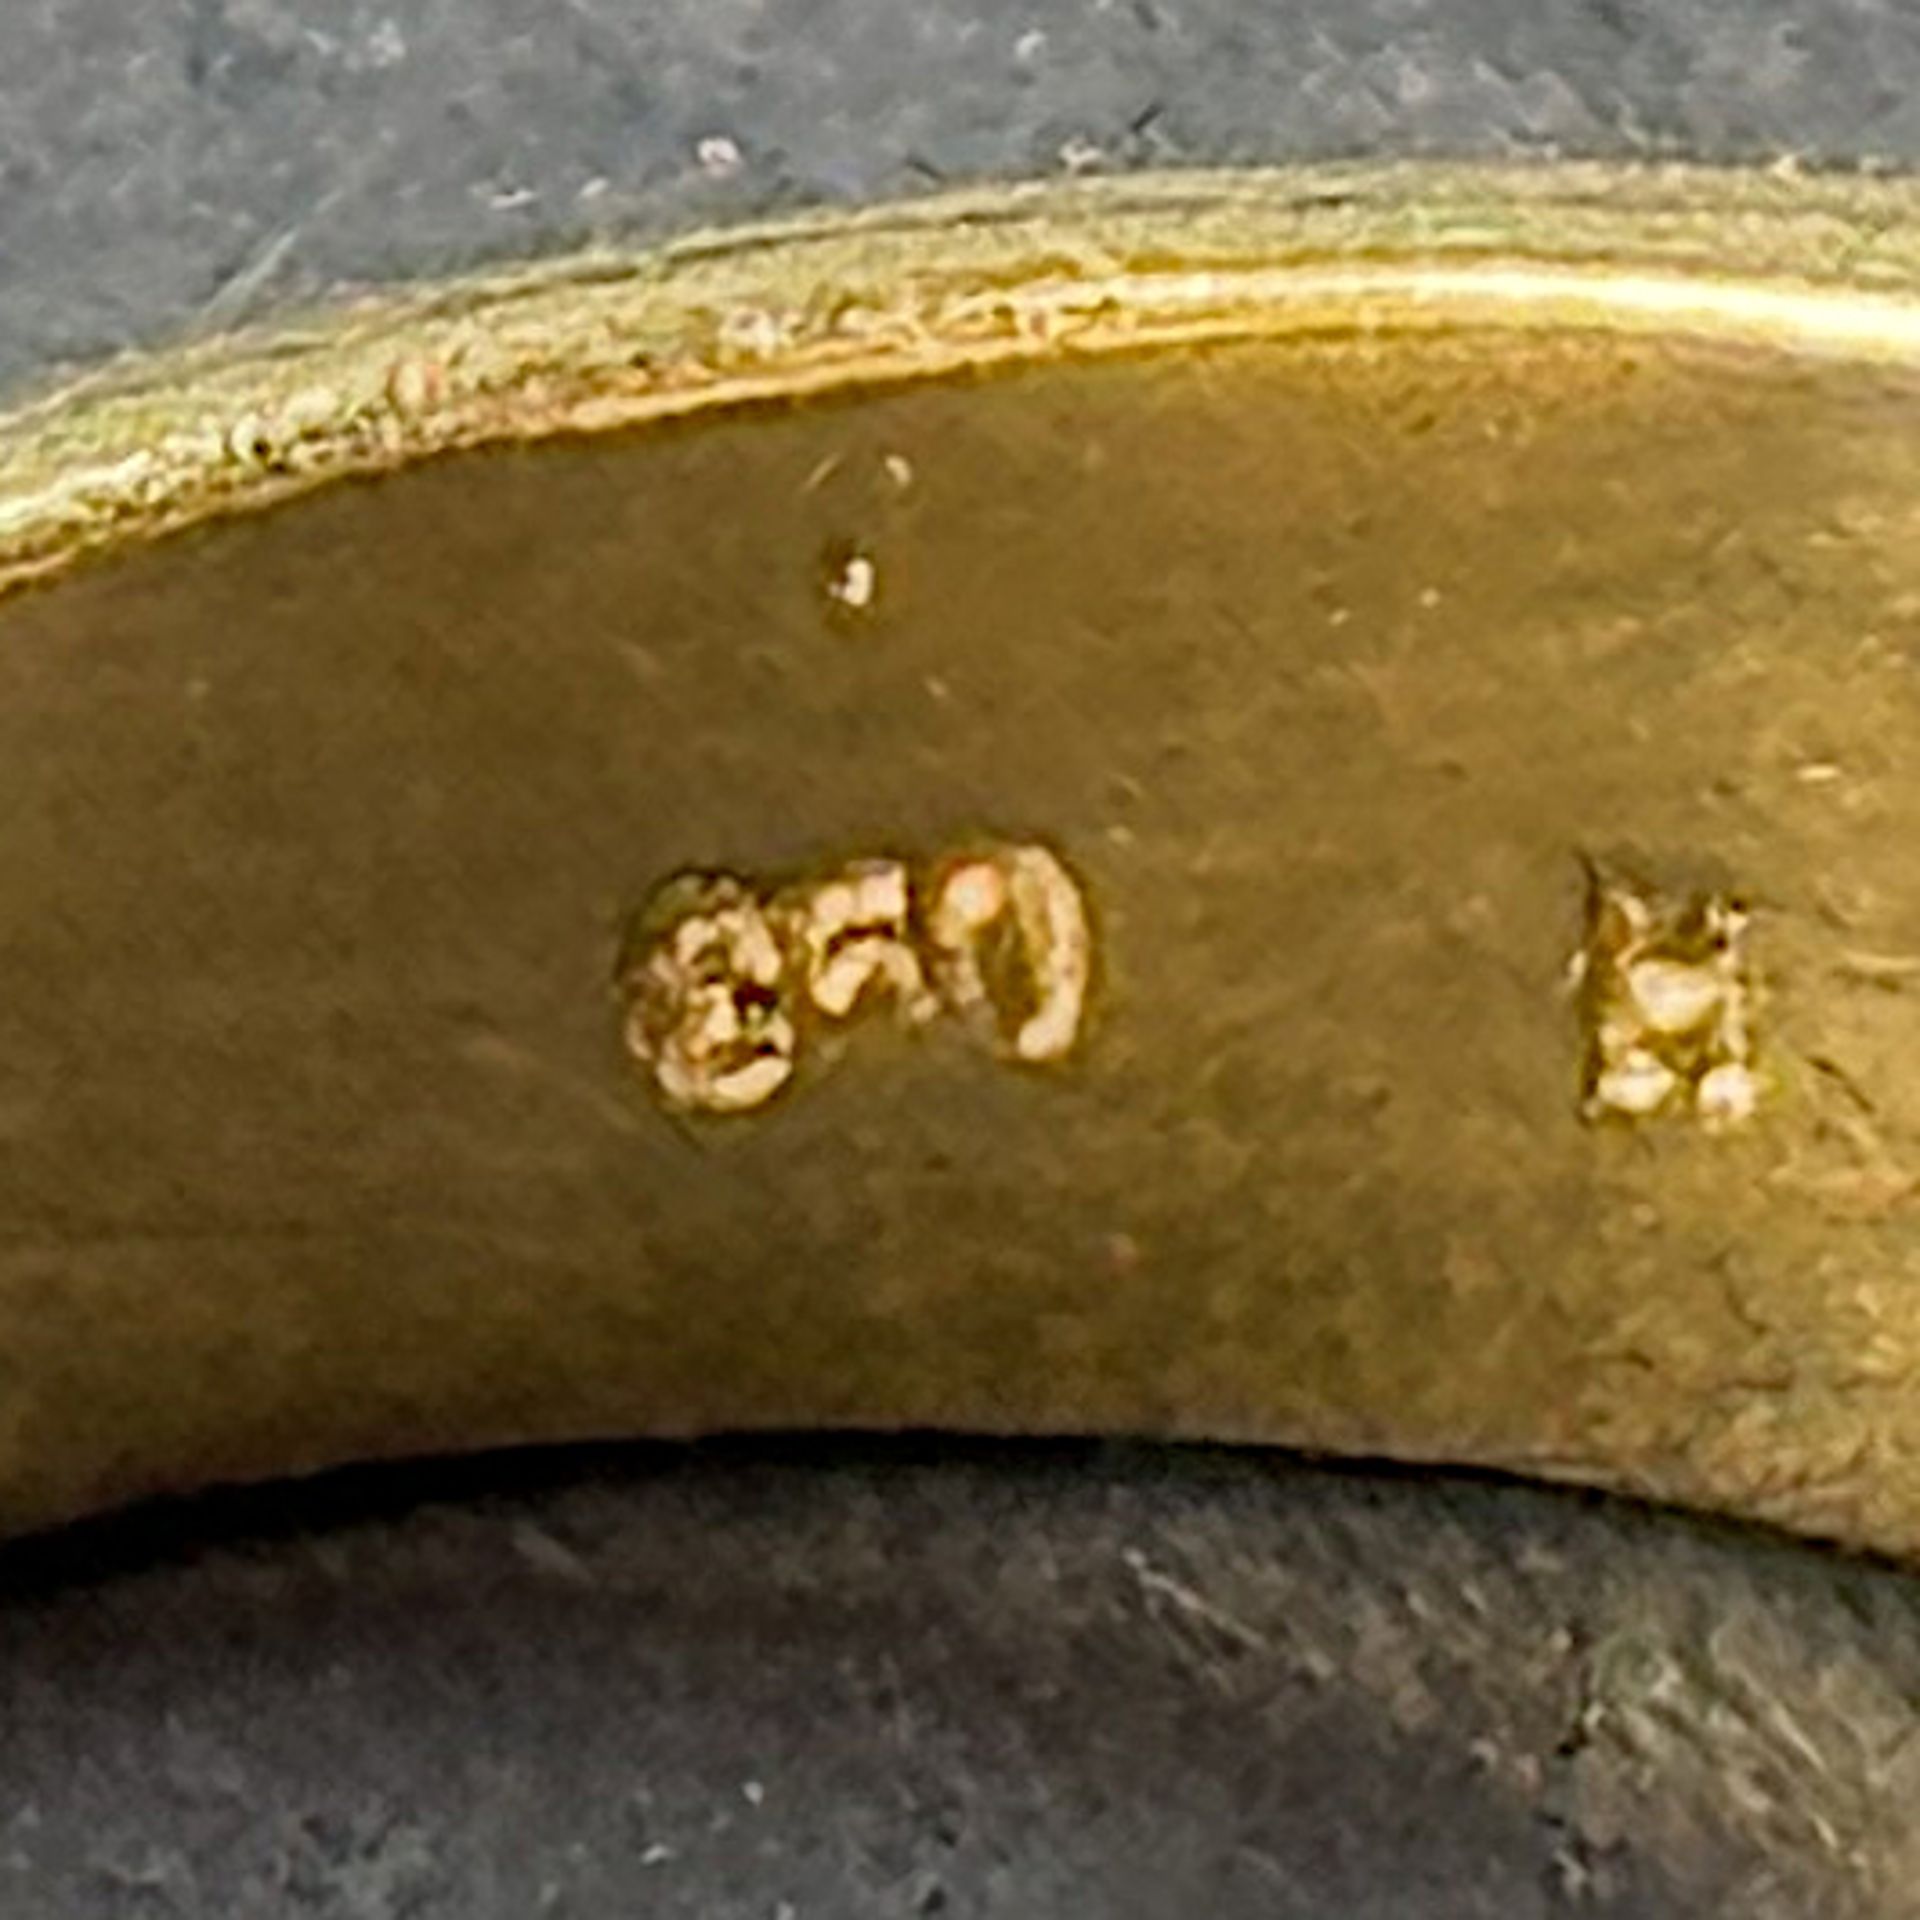 Diamant Ring, 21K Weiß- und Gelbgold (unleserlich punziert und getestet), 7g, mittig Schmuckstein, - Bild 3 aus 3